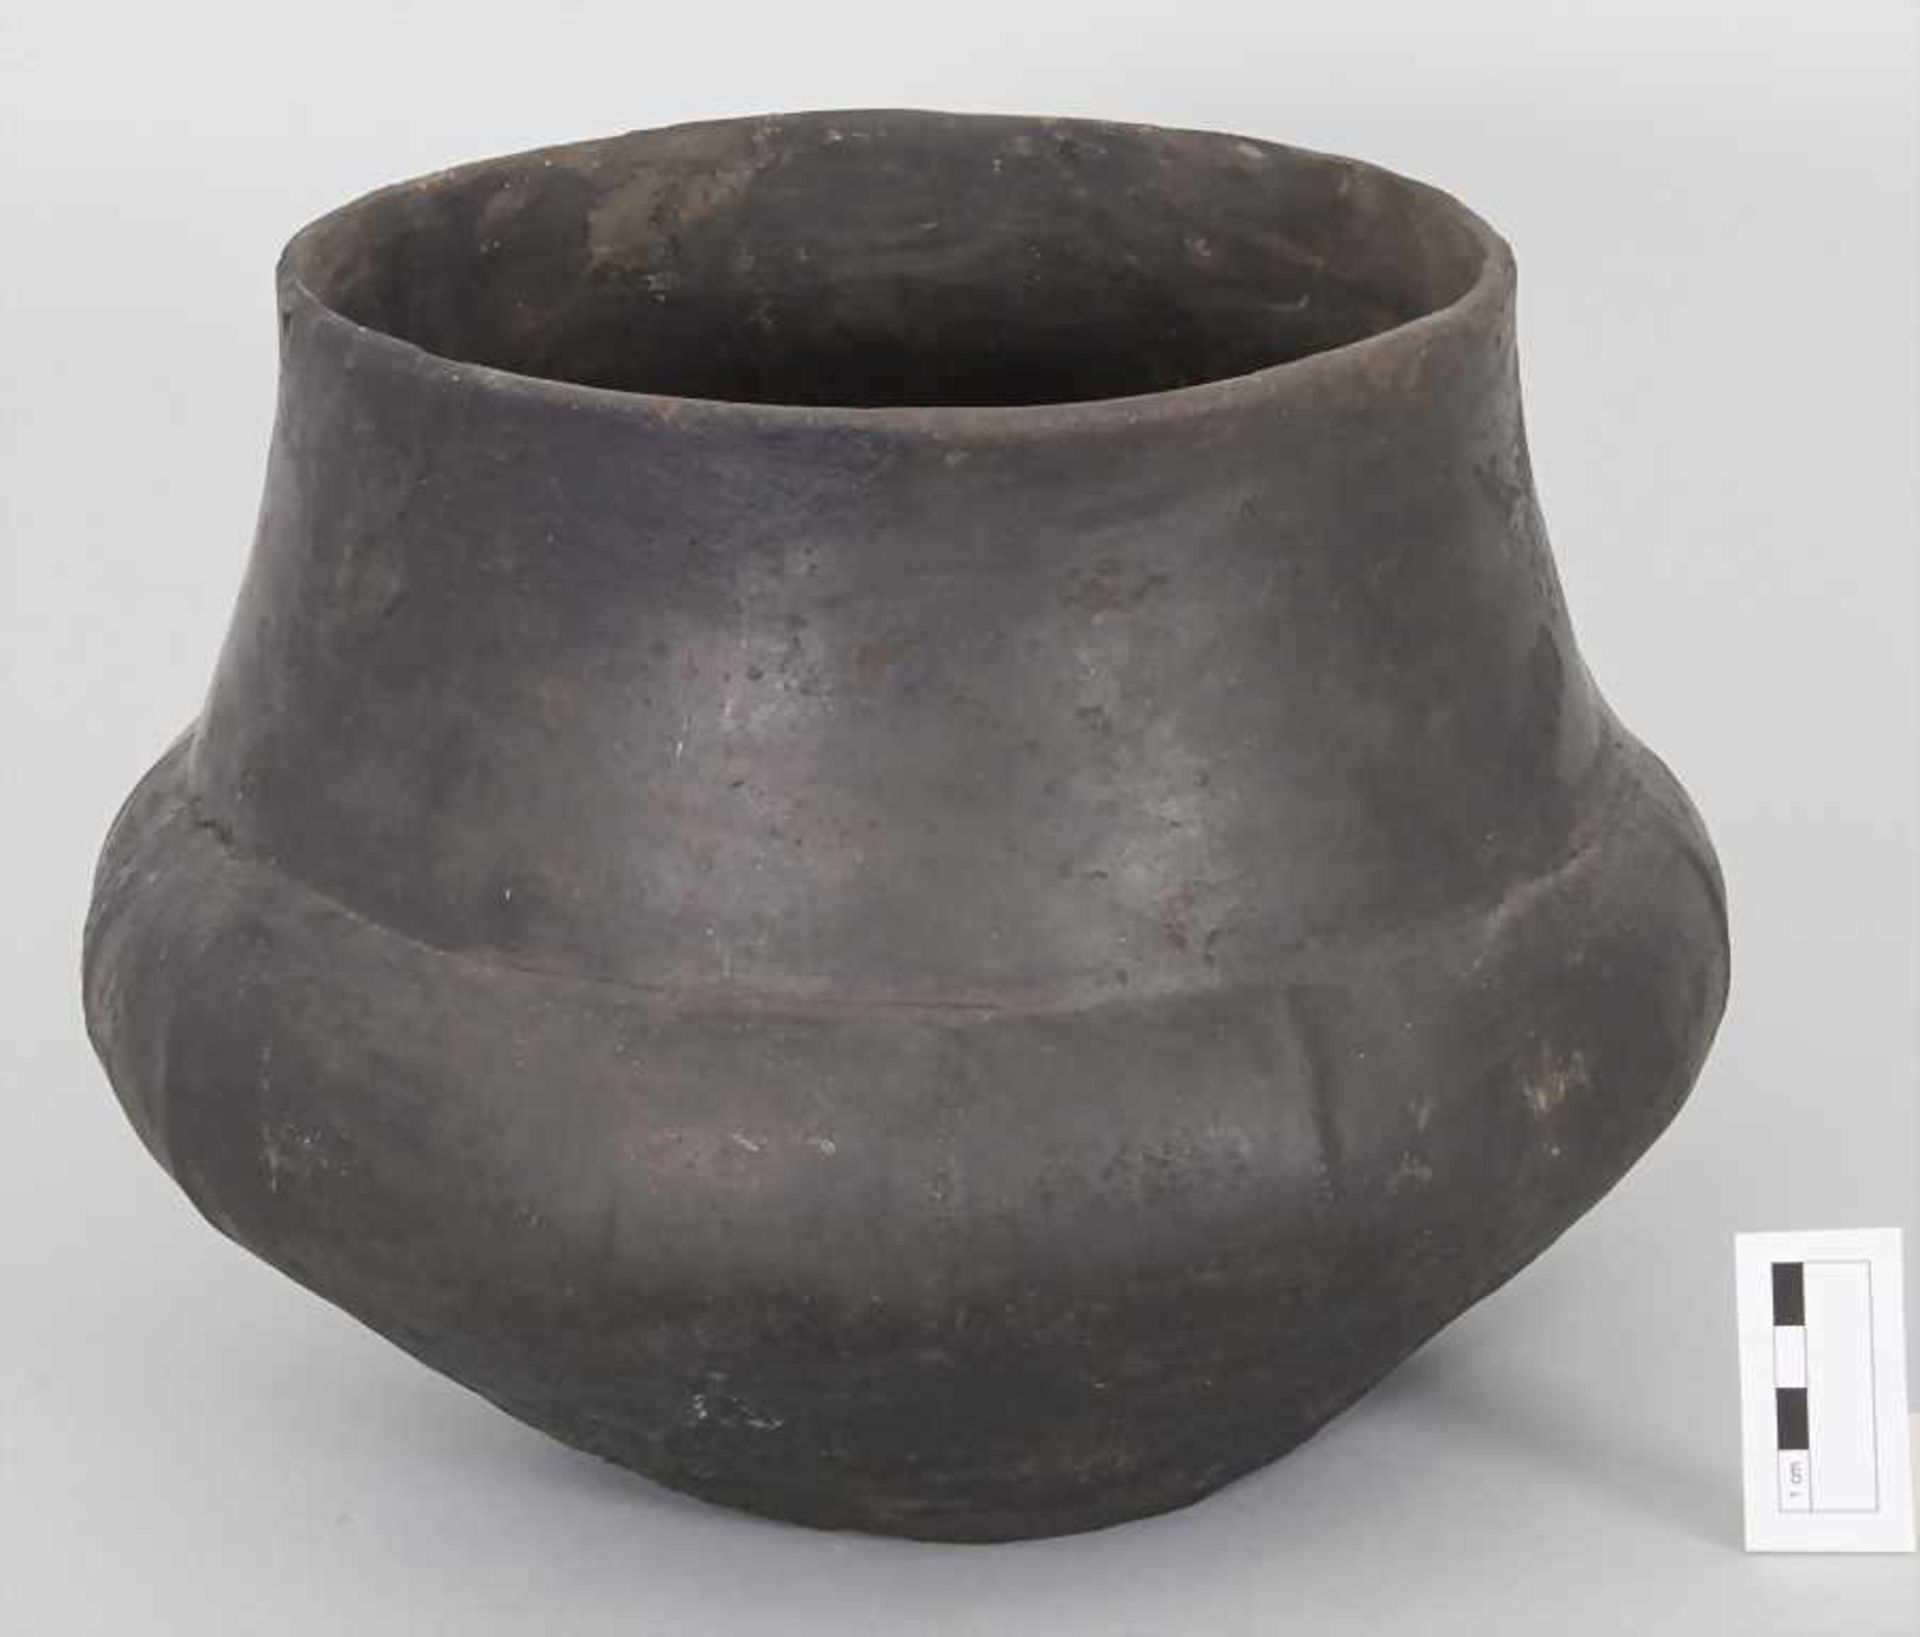 Bronzezeitliches Keramik-Gefäß / A Bronze Age ceramic vessel, Lausitzer Kultur, 9. - 6. Jh. v. Chr. - Image 2 of 6